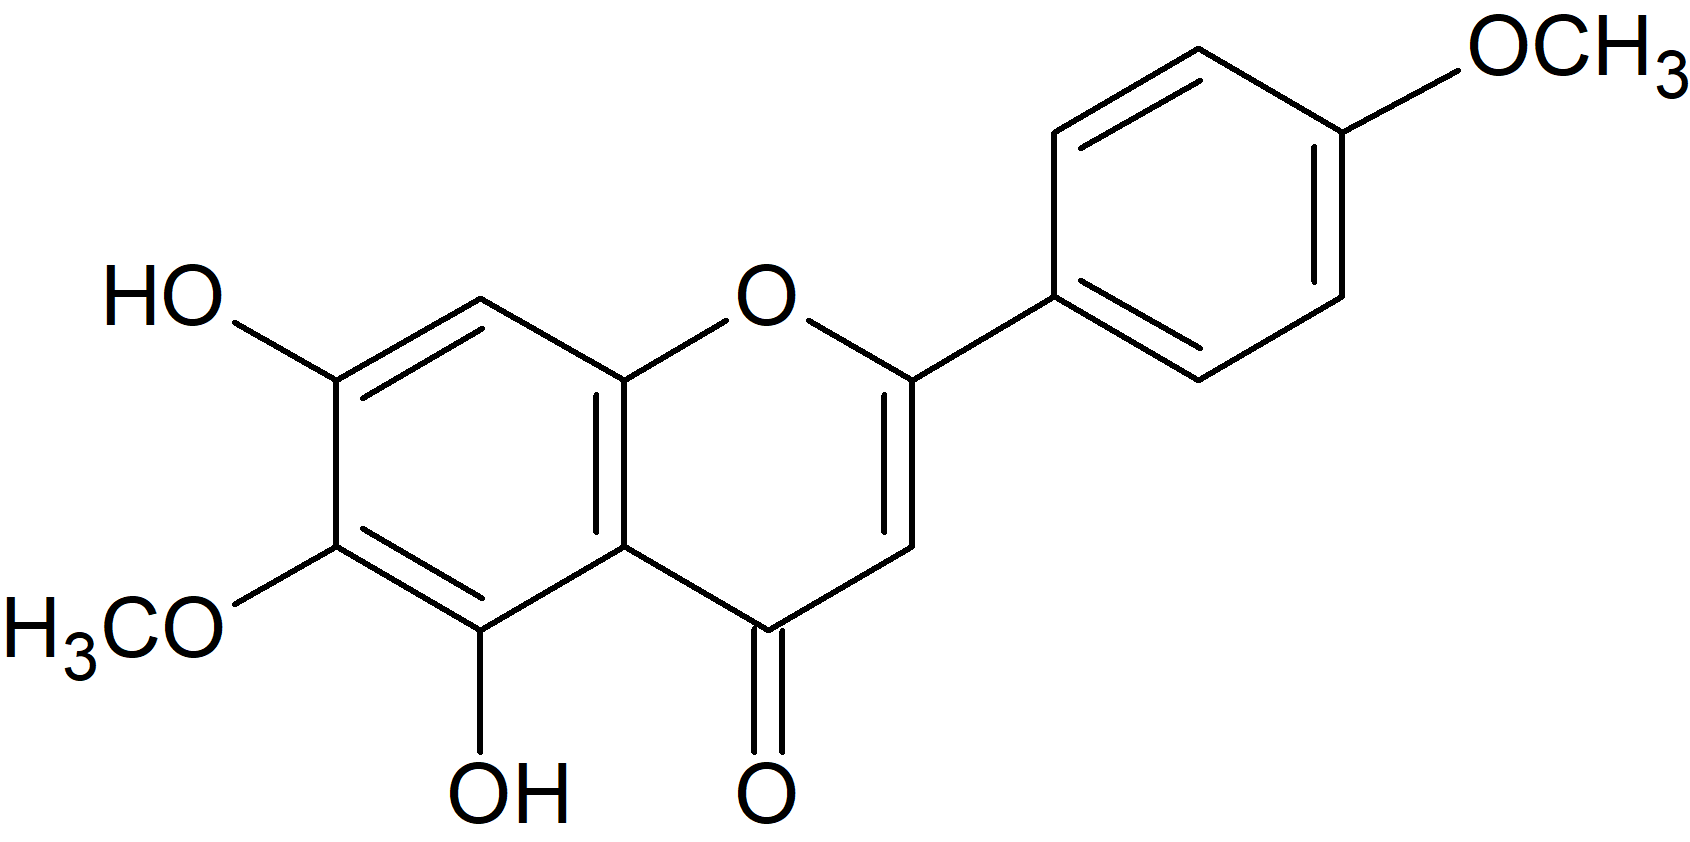 5,7-Dihydroxy-6,4'-dimethoxyflavone